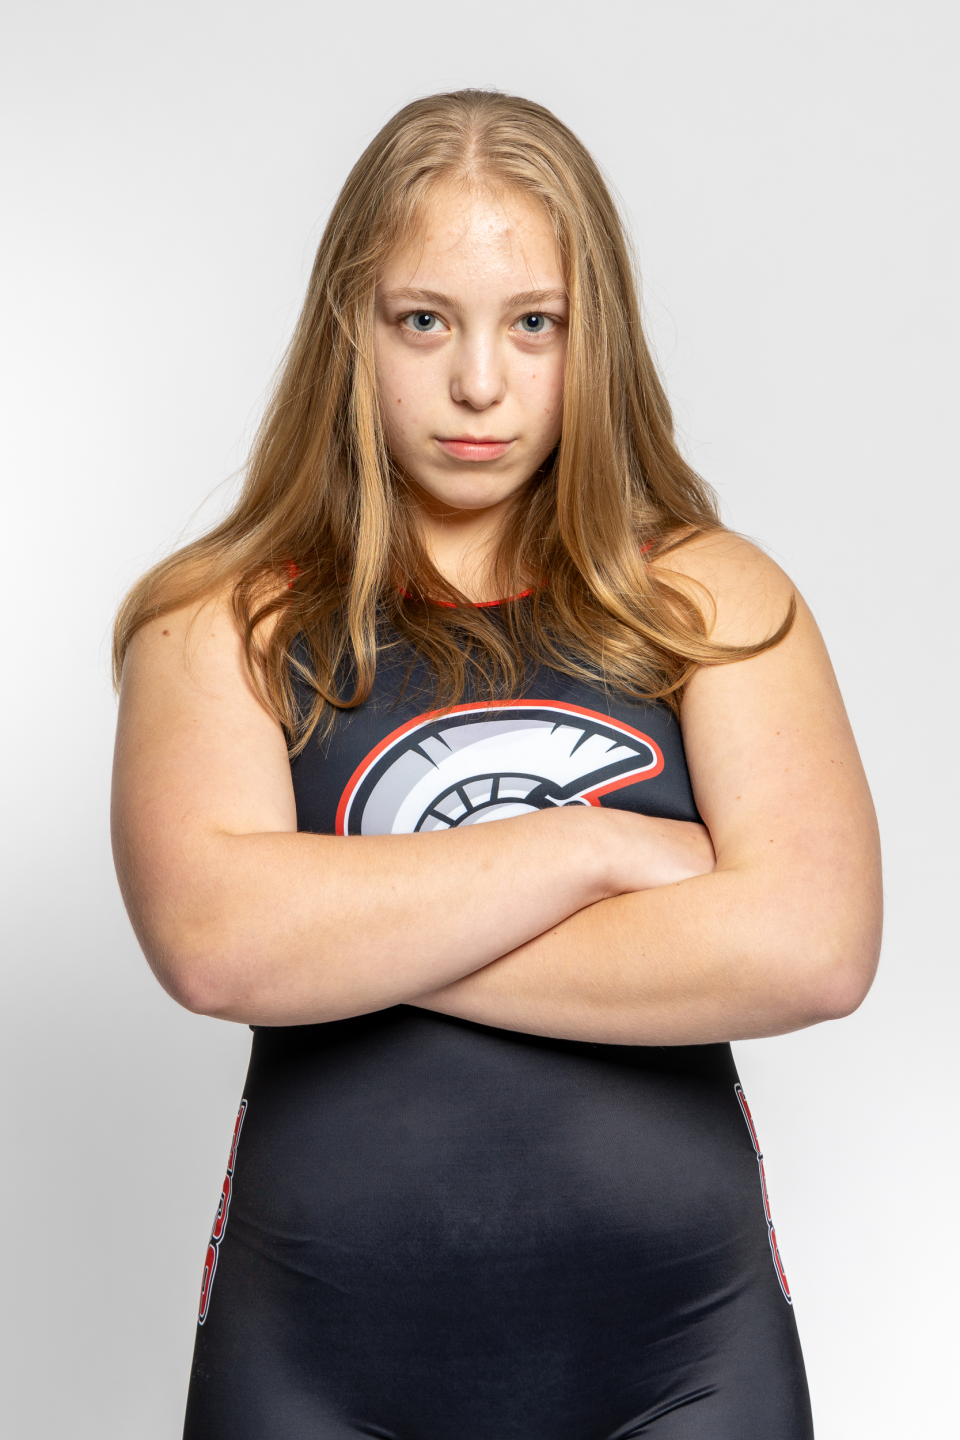 Emma Palmer, ECS girls weightlifting